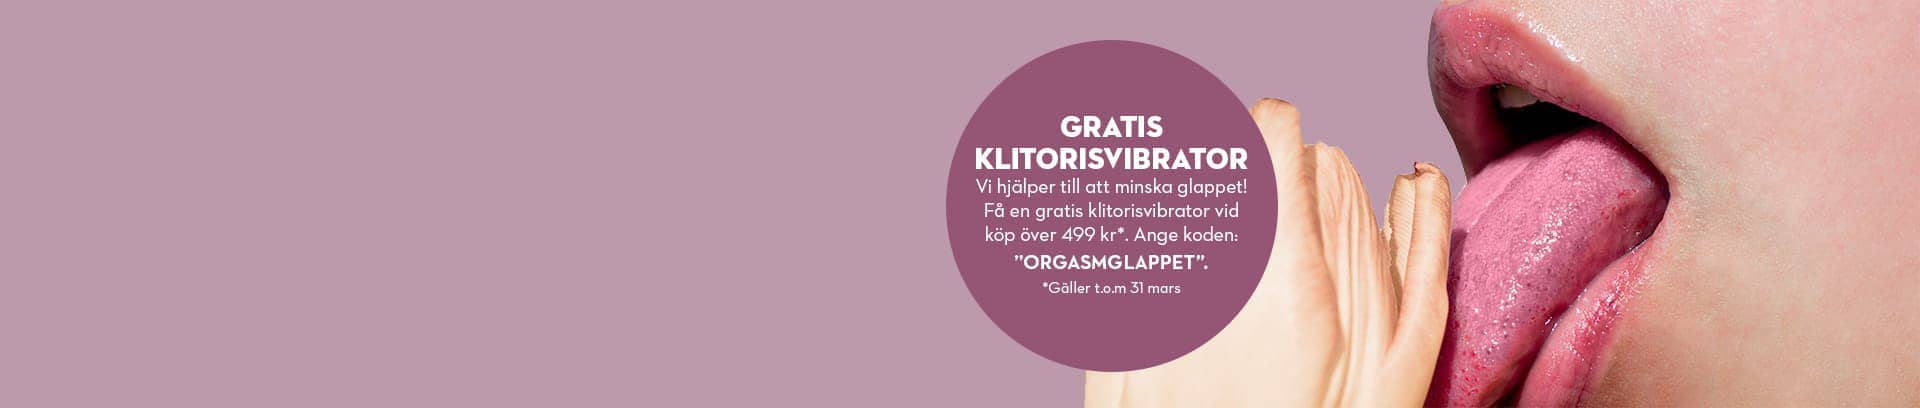 Få en gratis klitorisvibrator med koden ORGASMGLAPPET vid köp över 299 kr. Gäller t.o.m 31 mars.